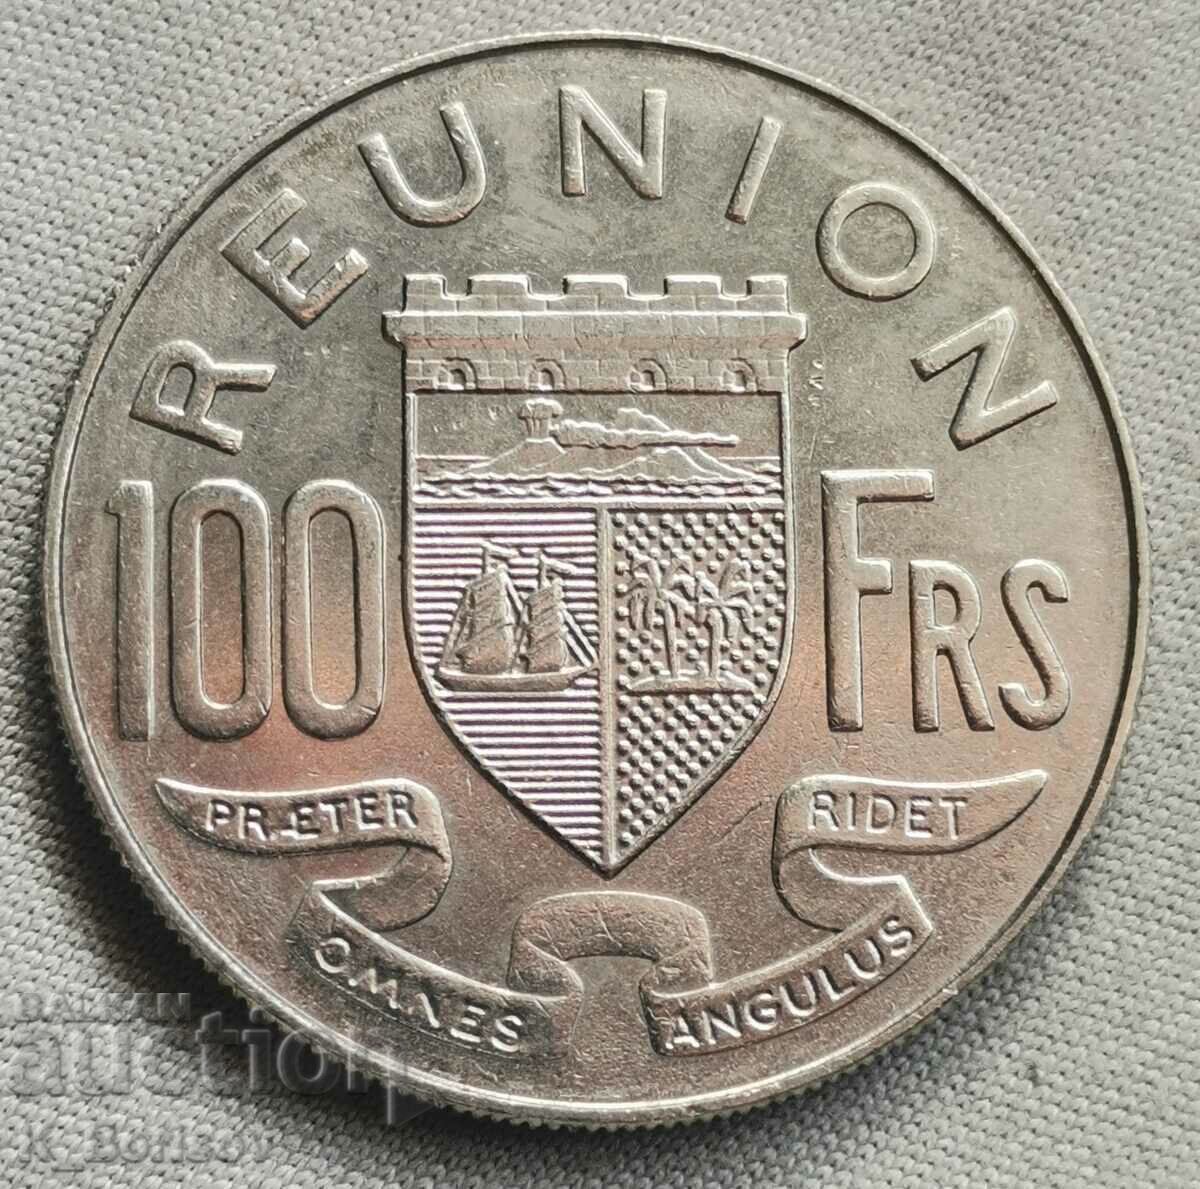 Реюнион 100 франка 1972